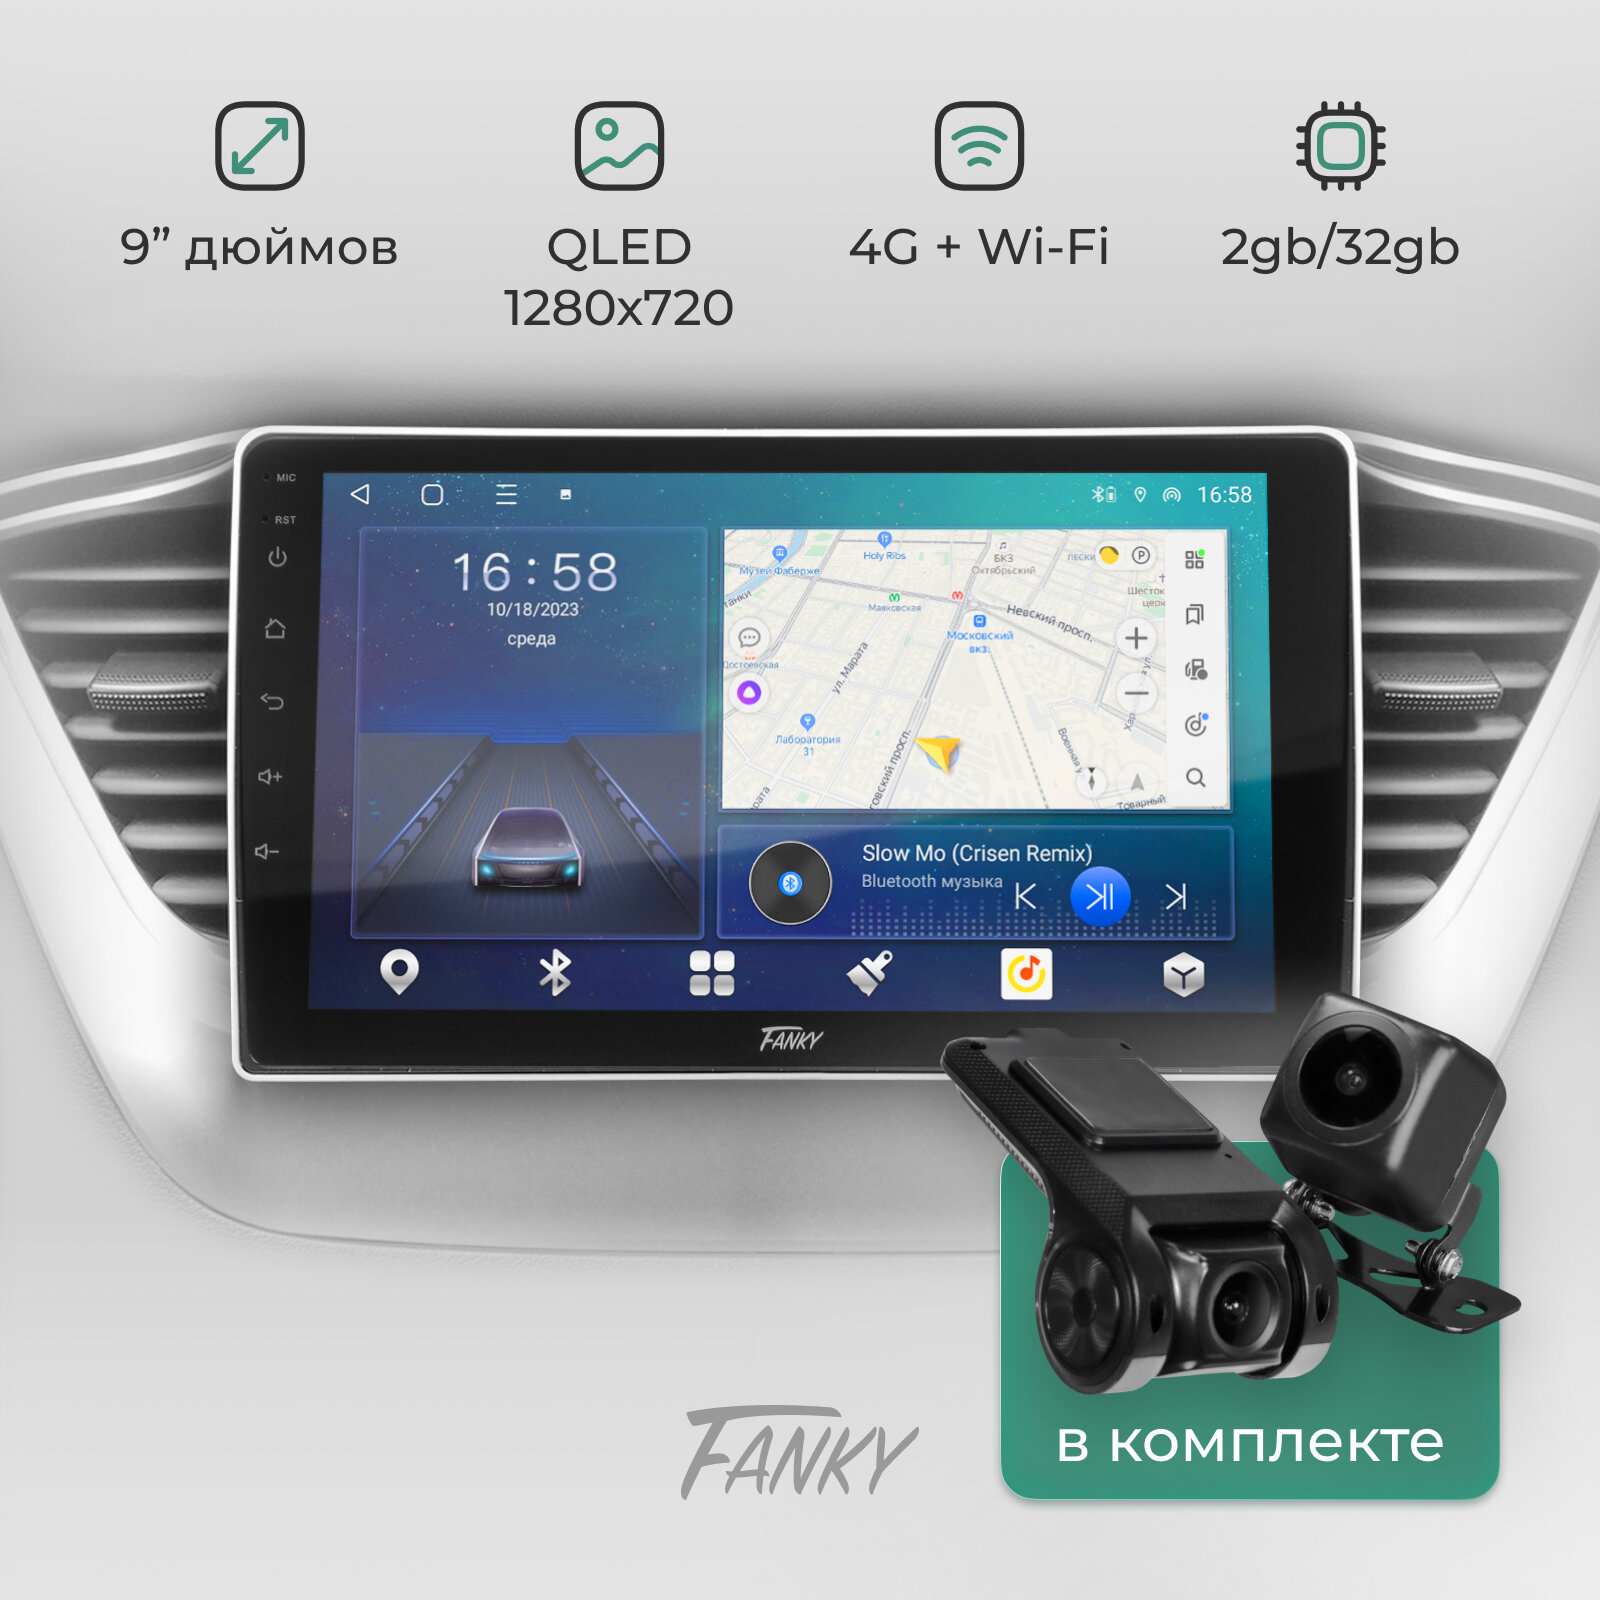 Универсальная автомагнитола 2din Fanky RT-2D 9 дюймов 2/32 с камерой заднего вида и видеорегистратором в комплекте, QLED экран 8-ми ядерный процессор чип TDA-7851 4G Wi-Fi Bluetooth Android-12 беспроводной CarPlay и AndroidAuto